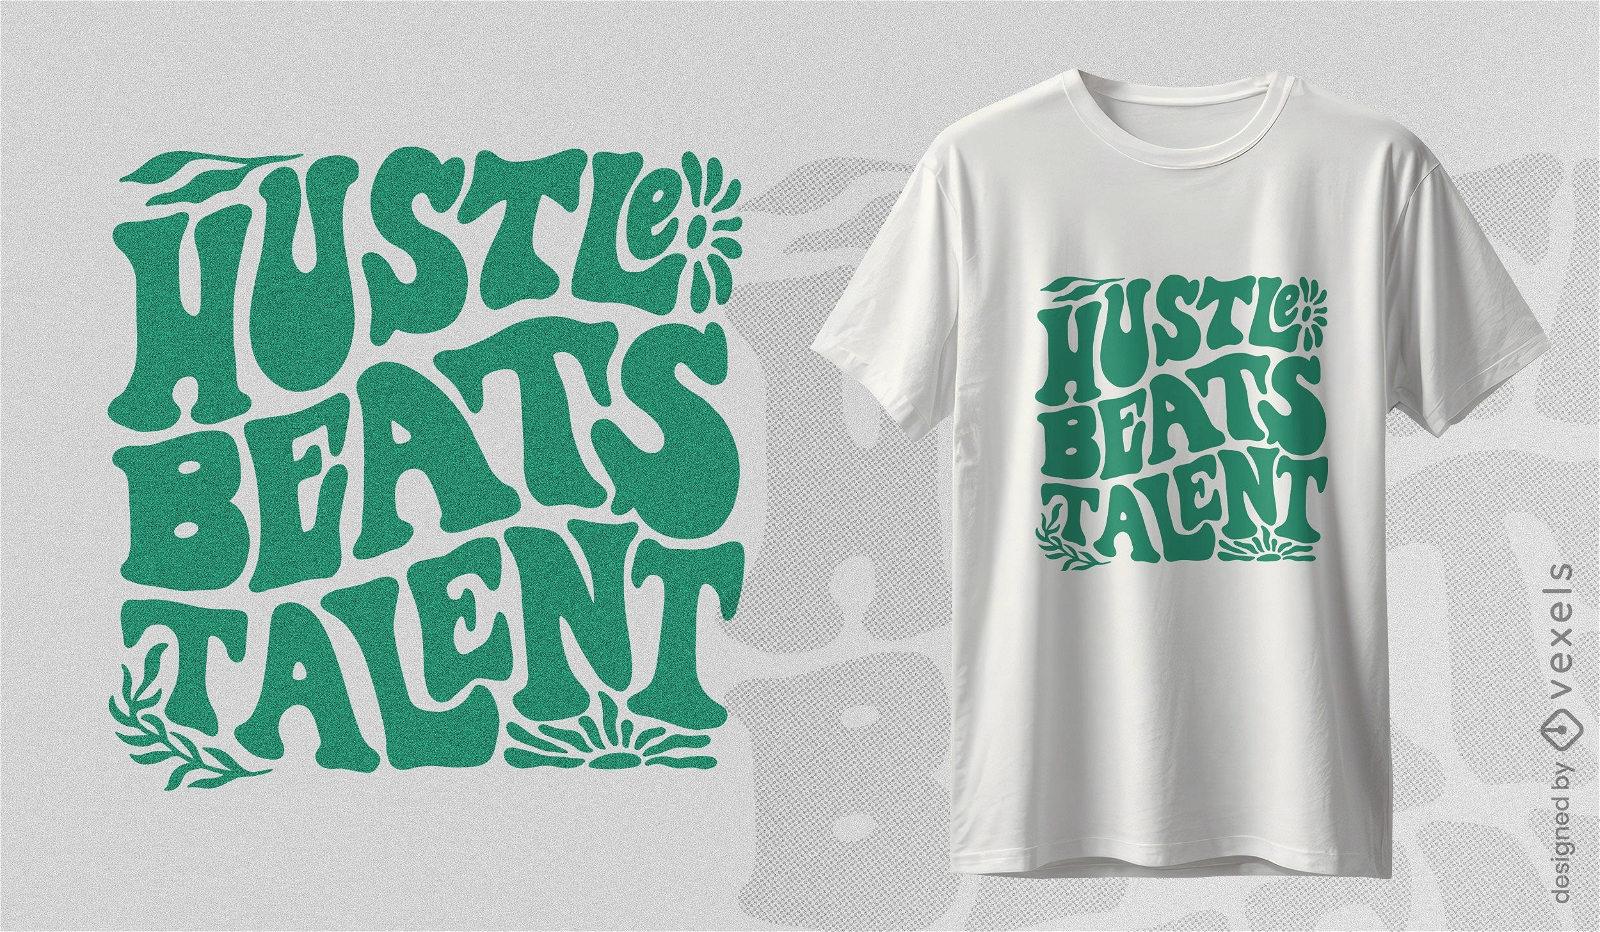 Hustle beats talent t-shirt design